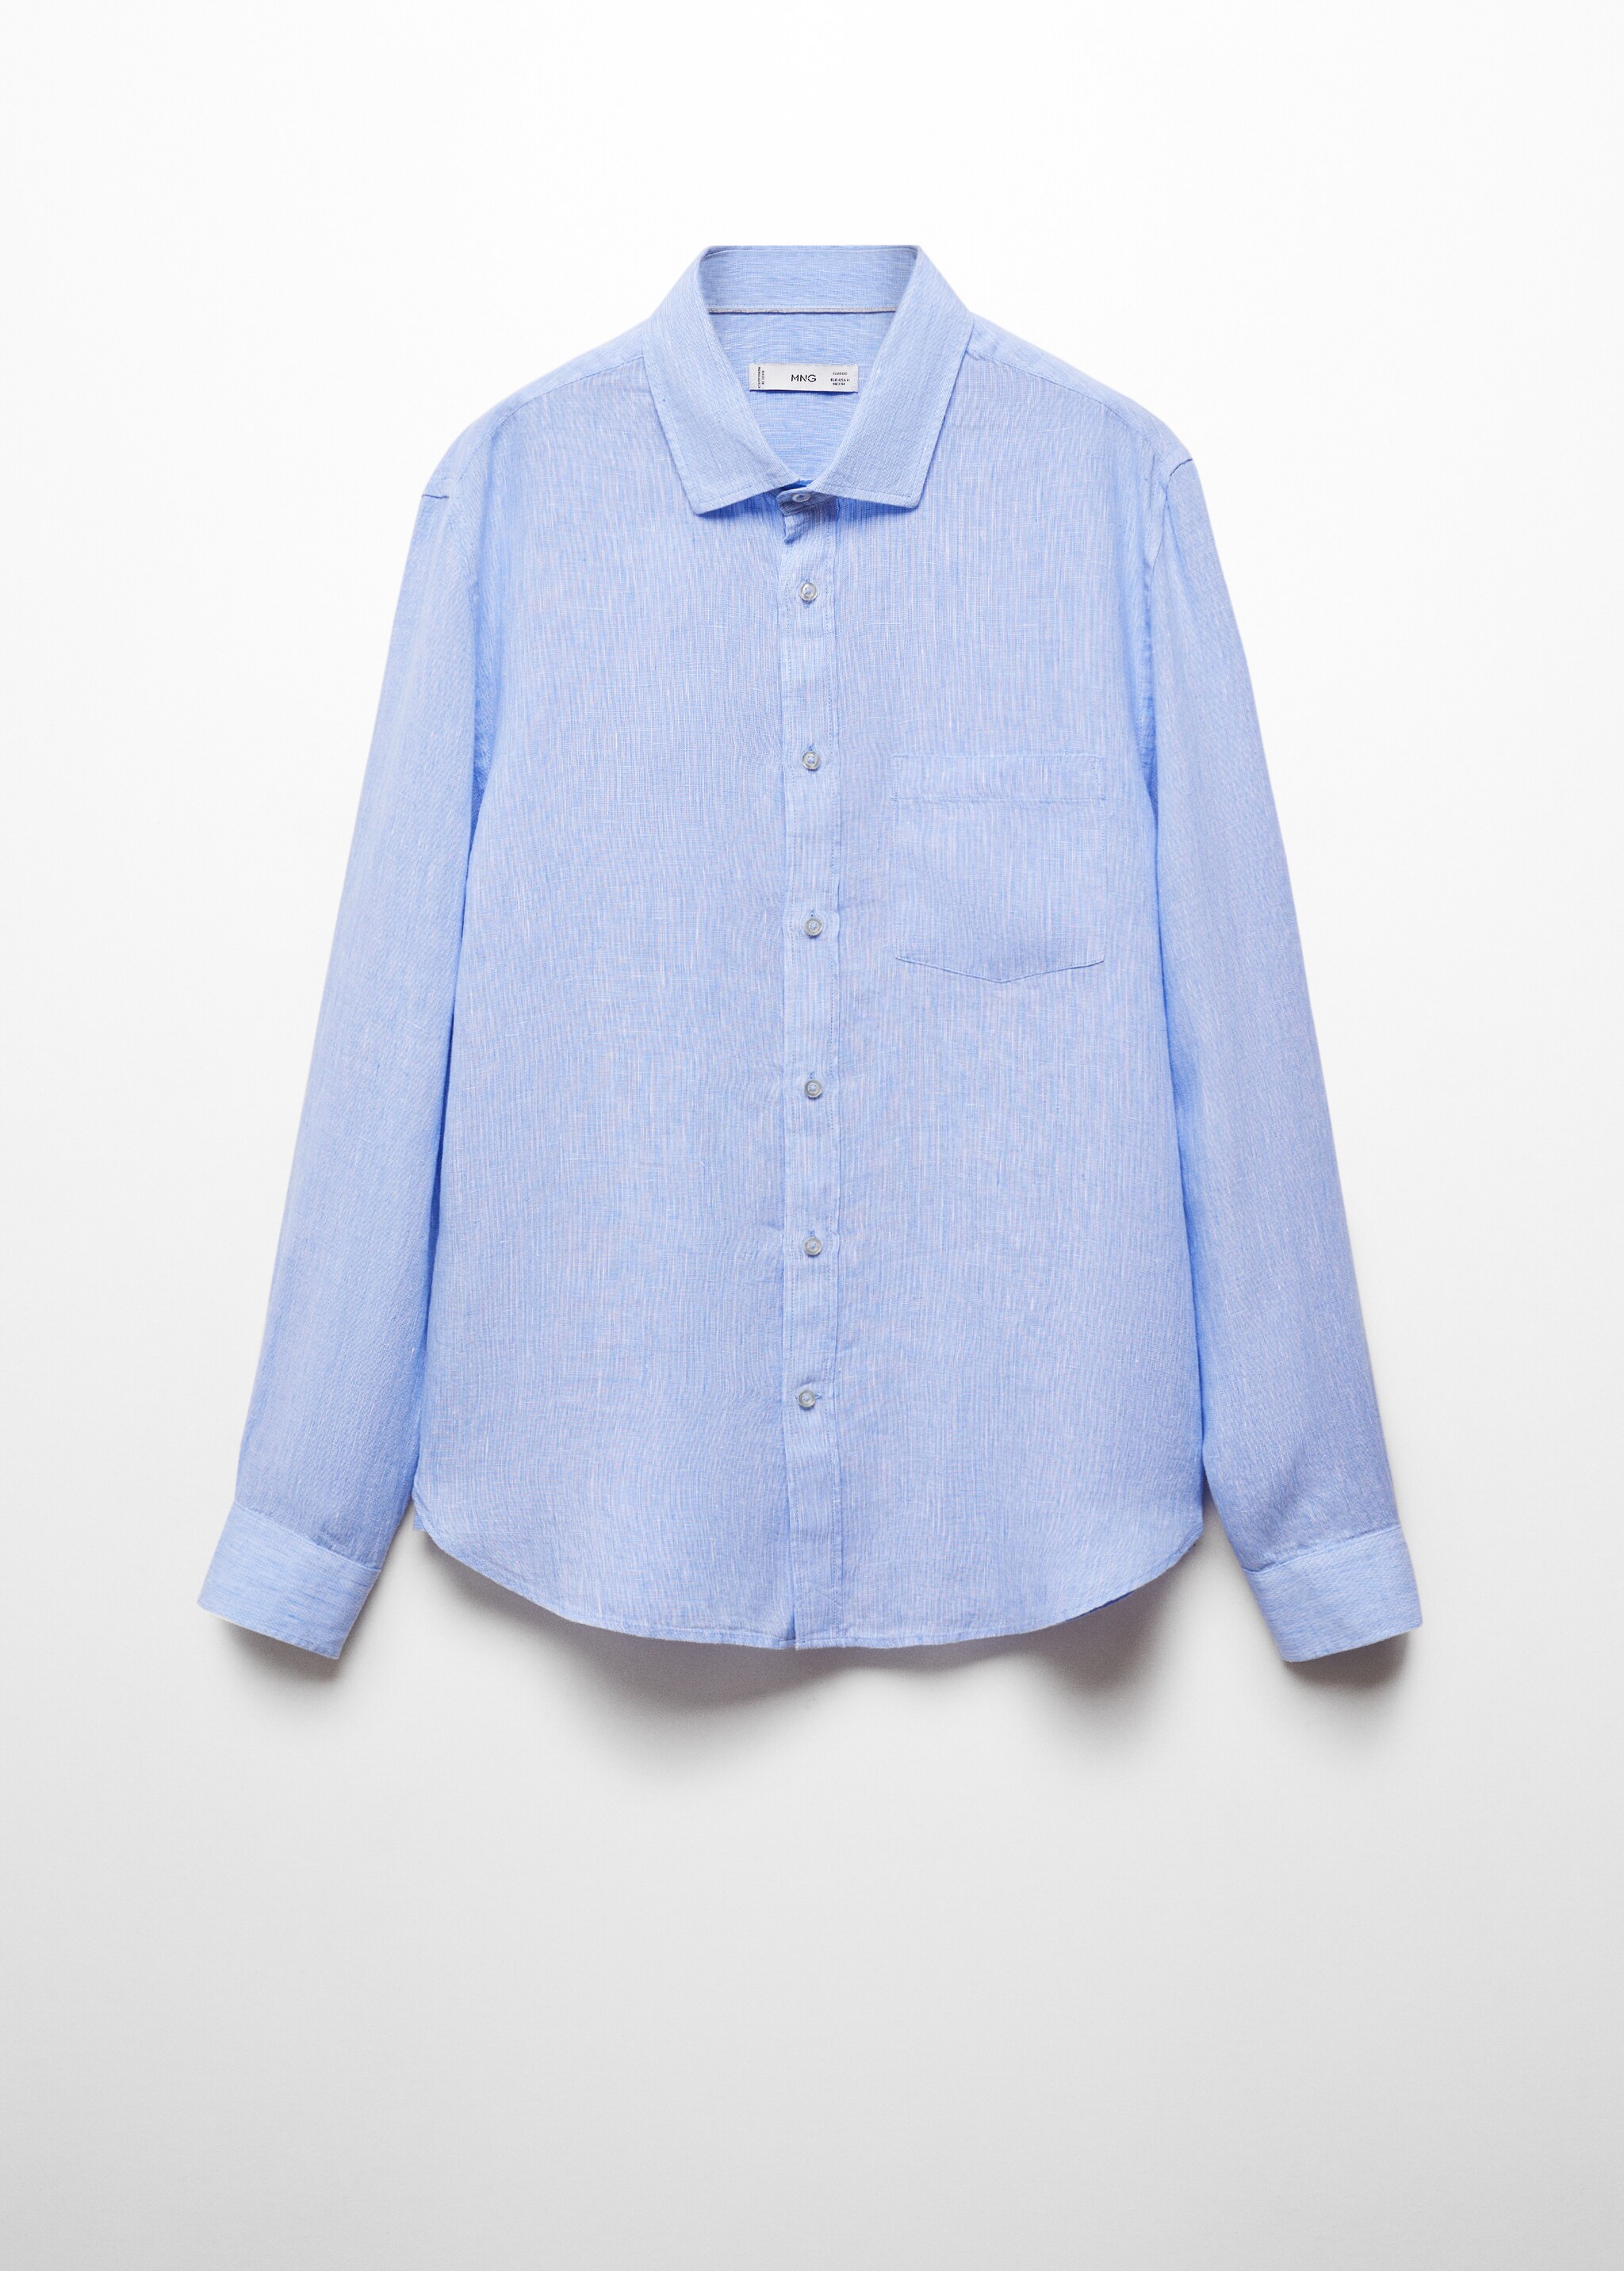 Camicia classic-fit 100% lino - Articolo senza modello